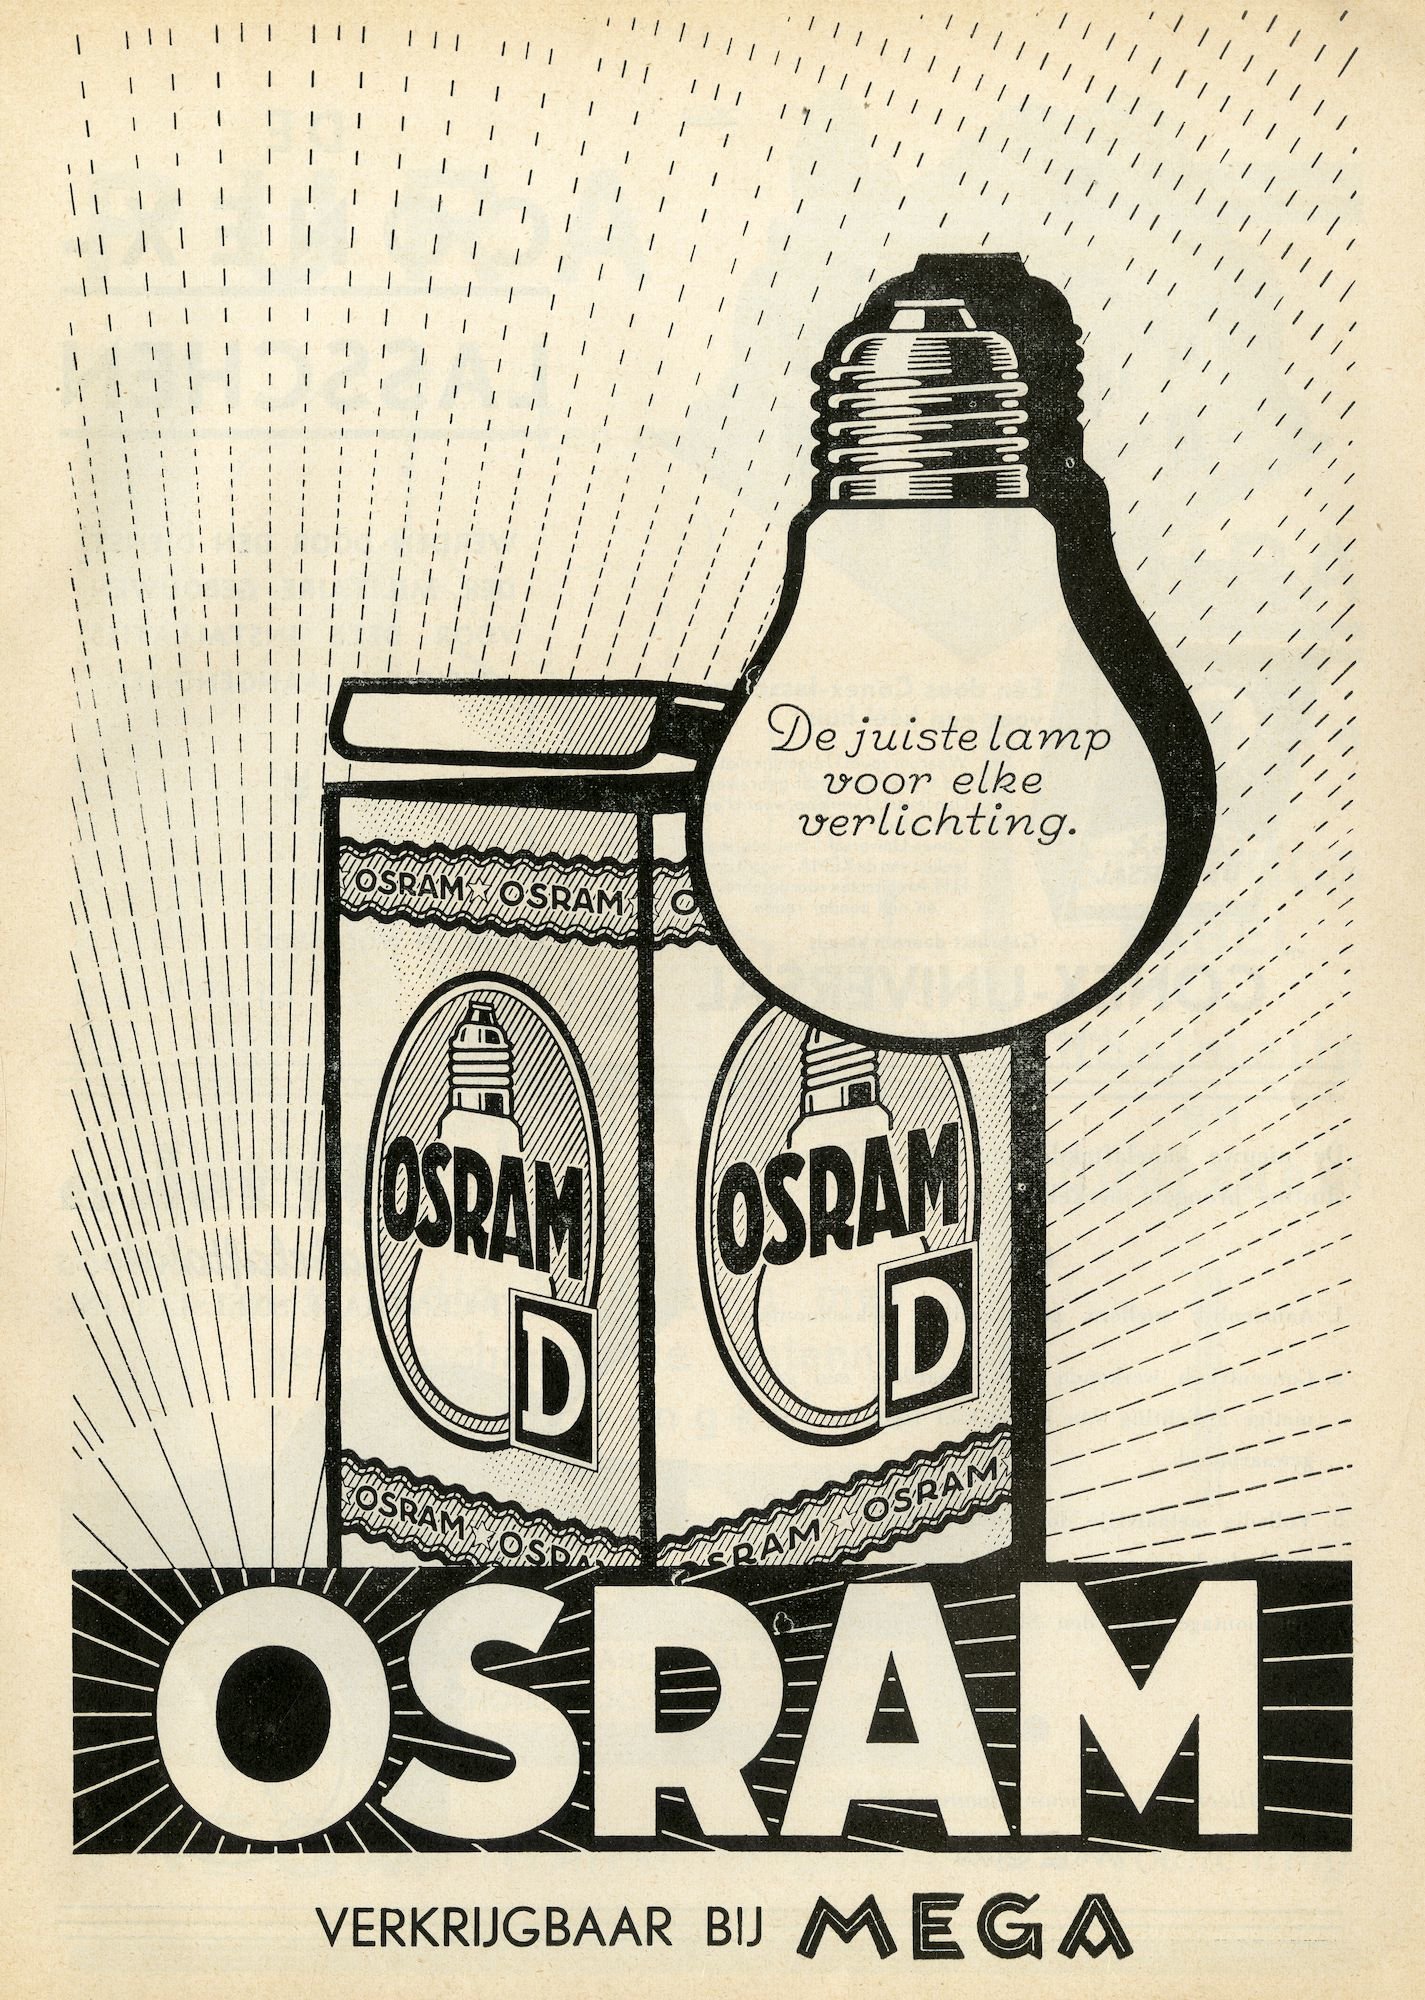 Reclame voor lampen van het merk Osram